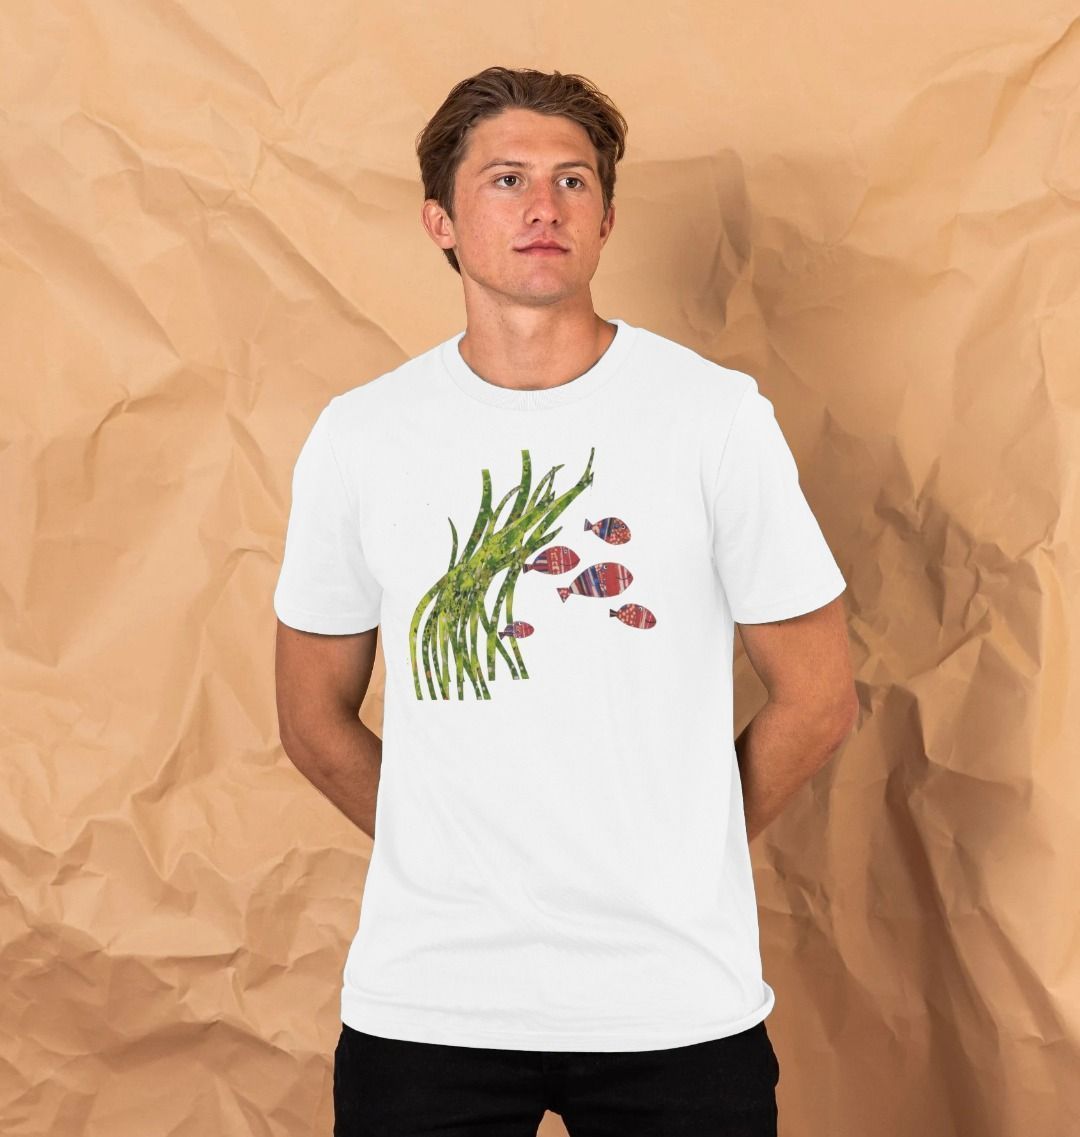 shoal days organic men's tee - Printed T-shirt - Sarah Millin